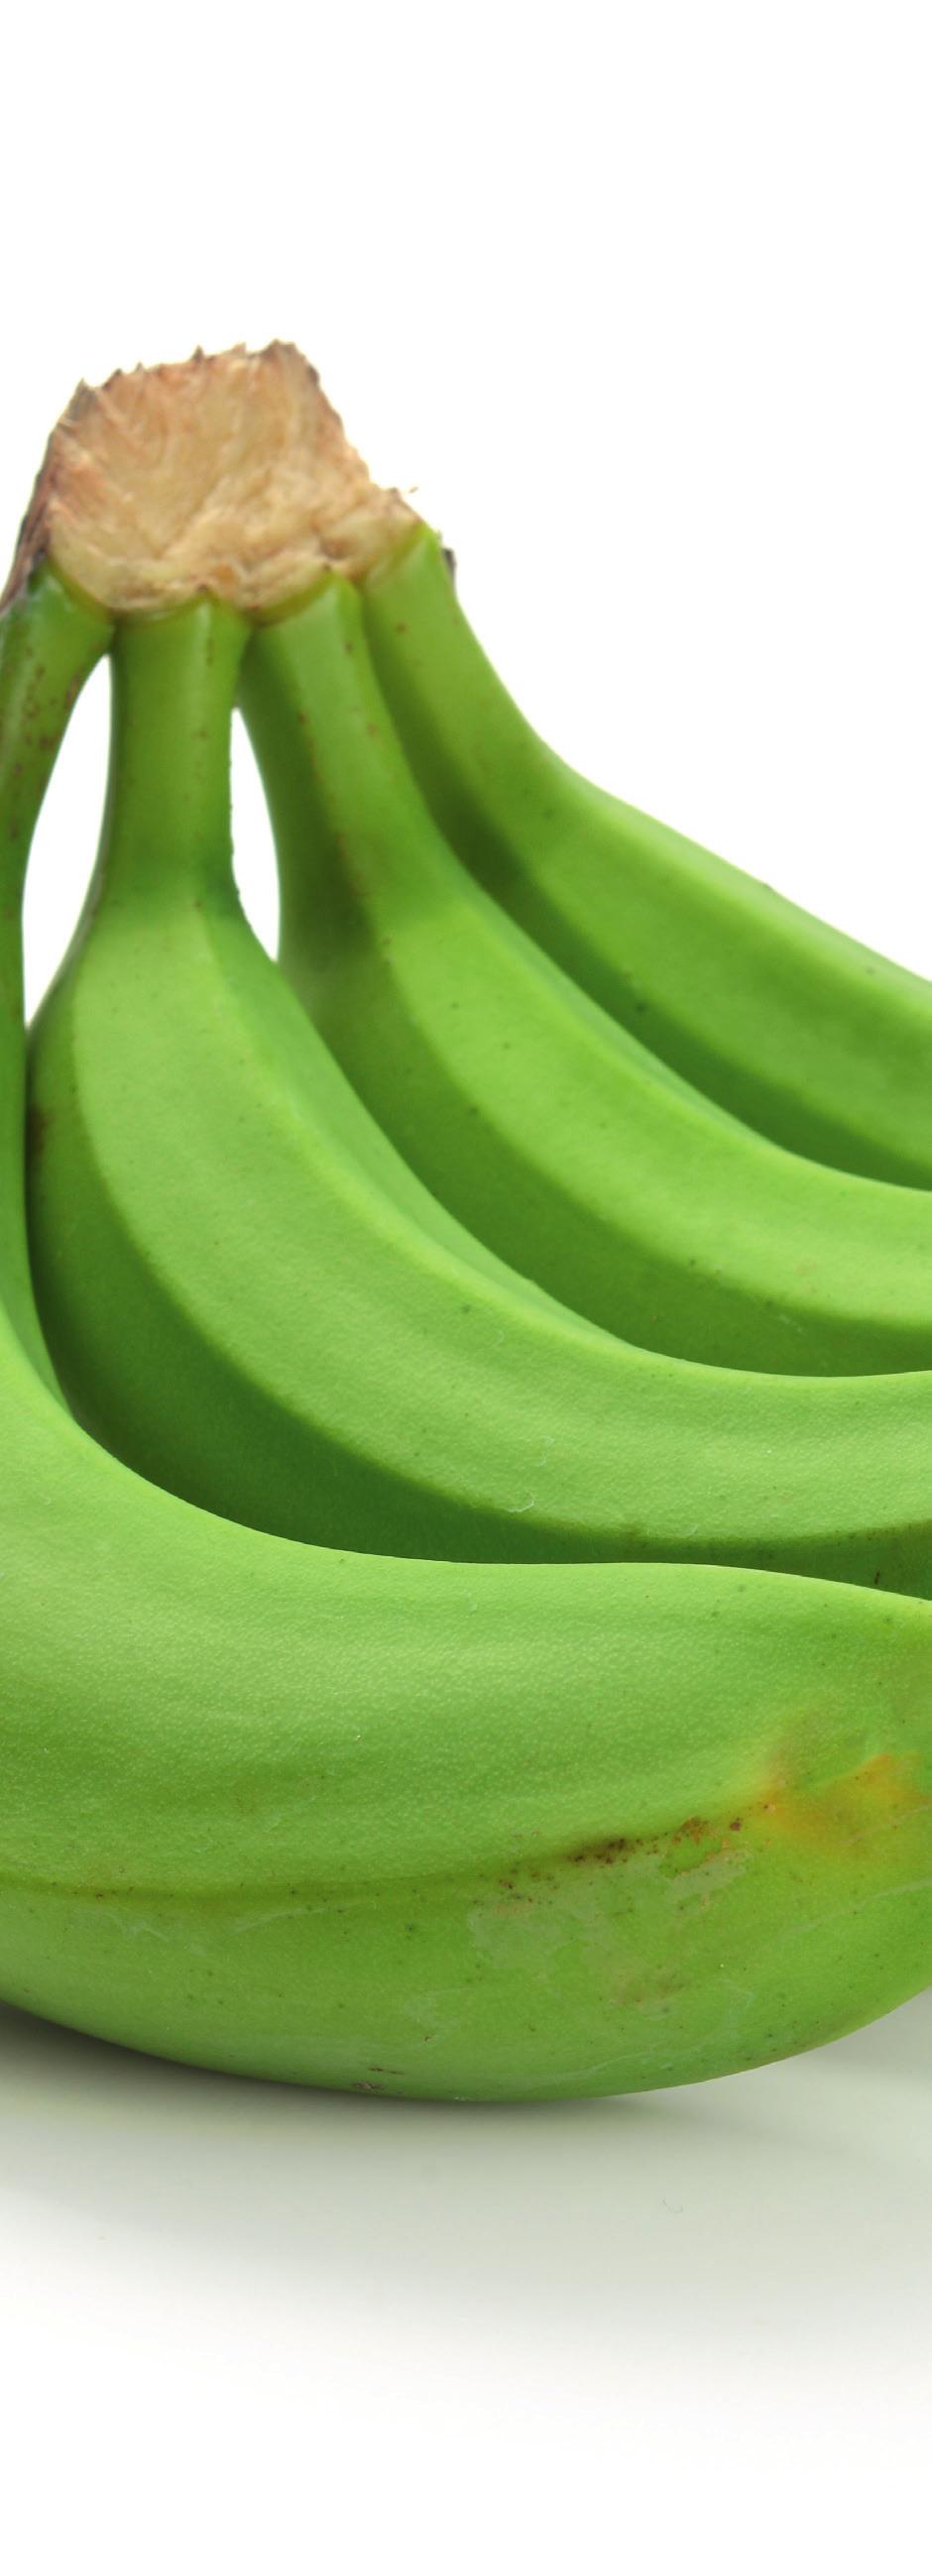 MERCOSUR PRINCIPALES PRODUCTOS EXPORTADOS El principal producto de exportación a MERCO- SUR fue banano. En volumen, el principal producto continuó siendo banano.